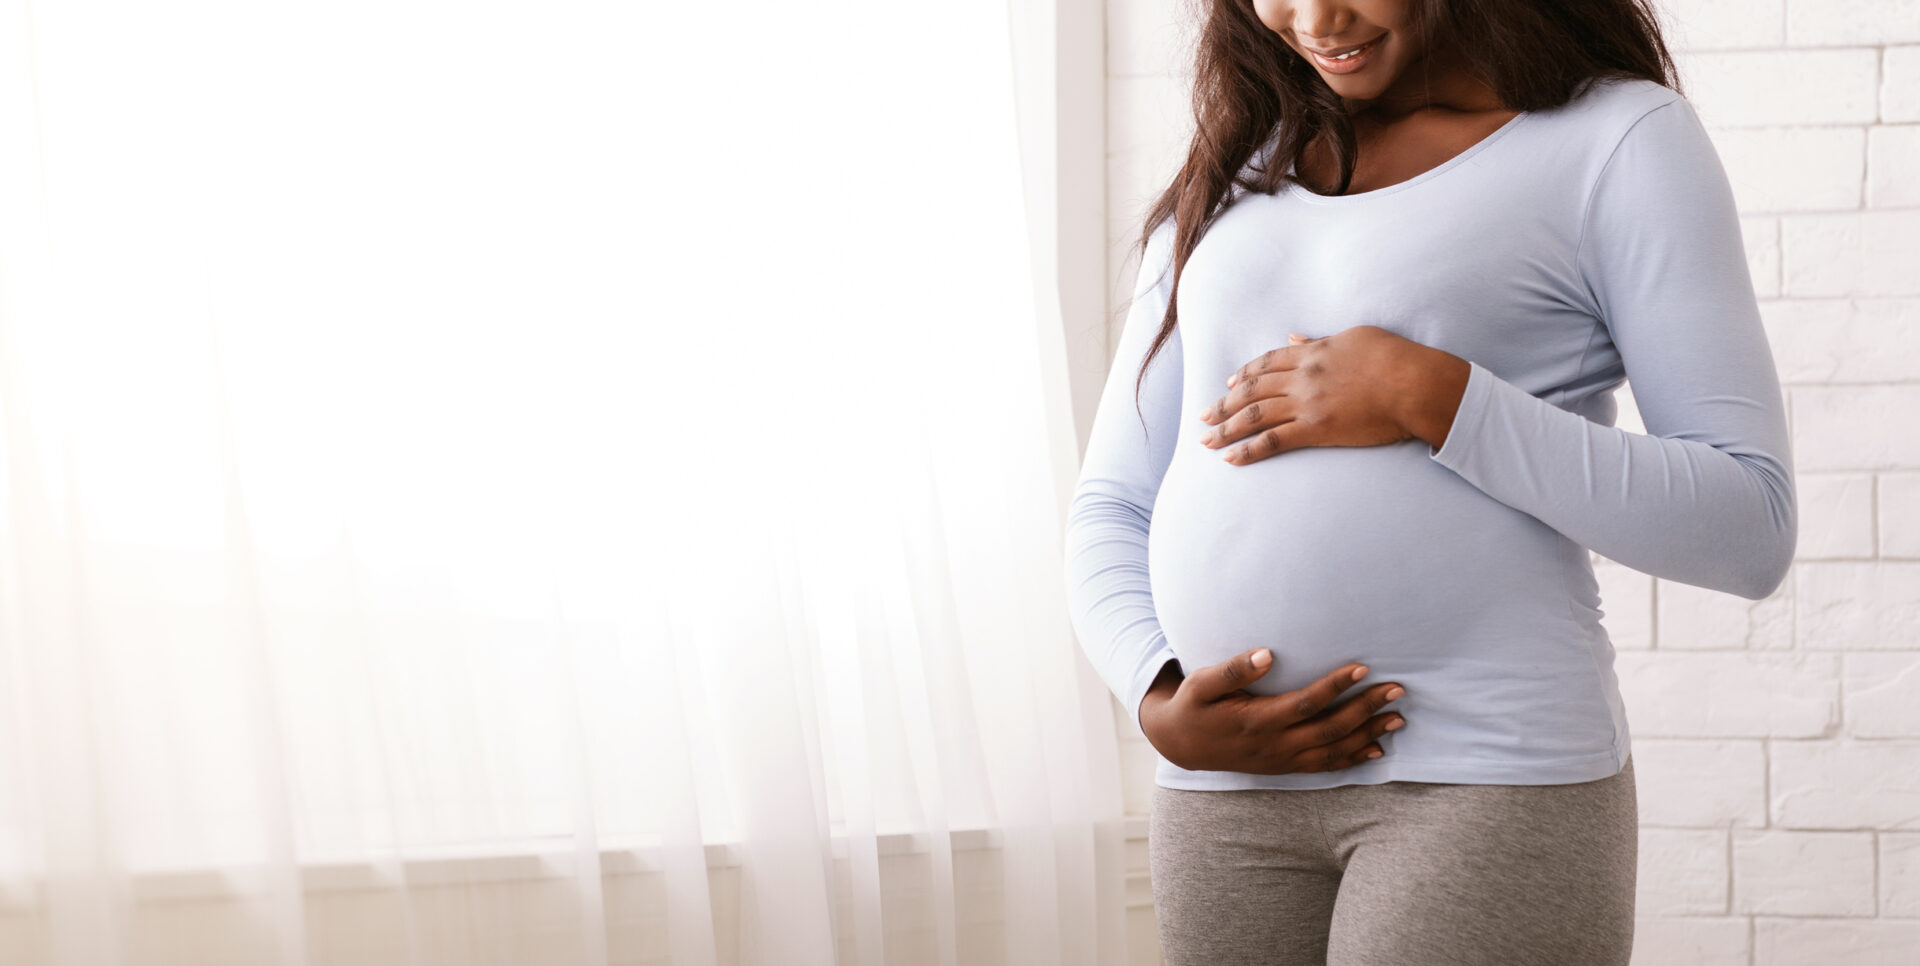 La thalidomide est classée tératogène et provoque des malformations congénitales lorsqu'elle est prise par des femmes enceintes.